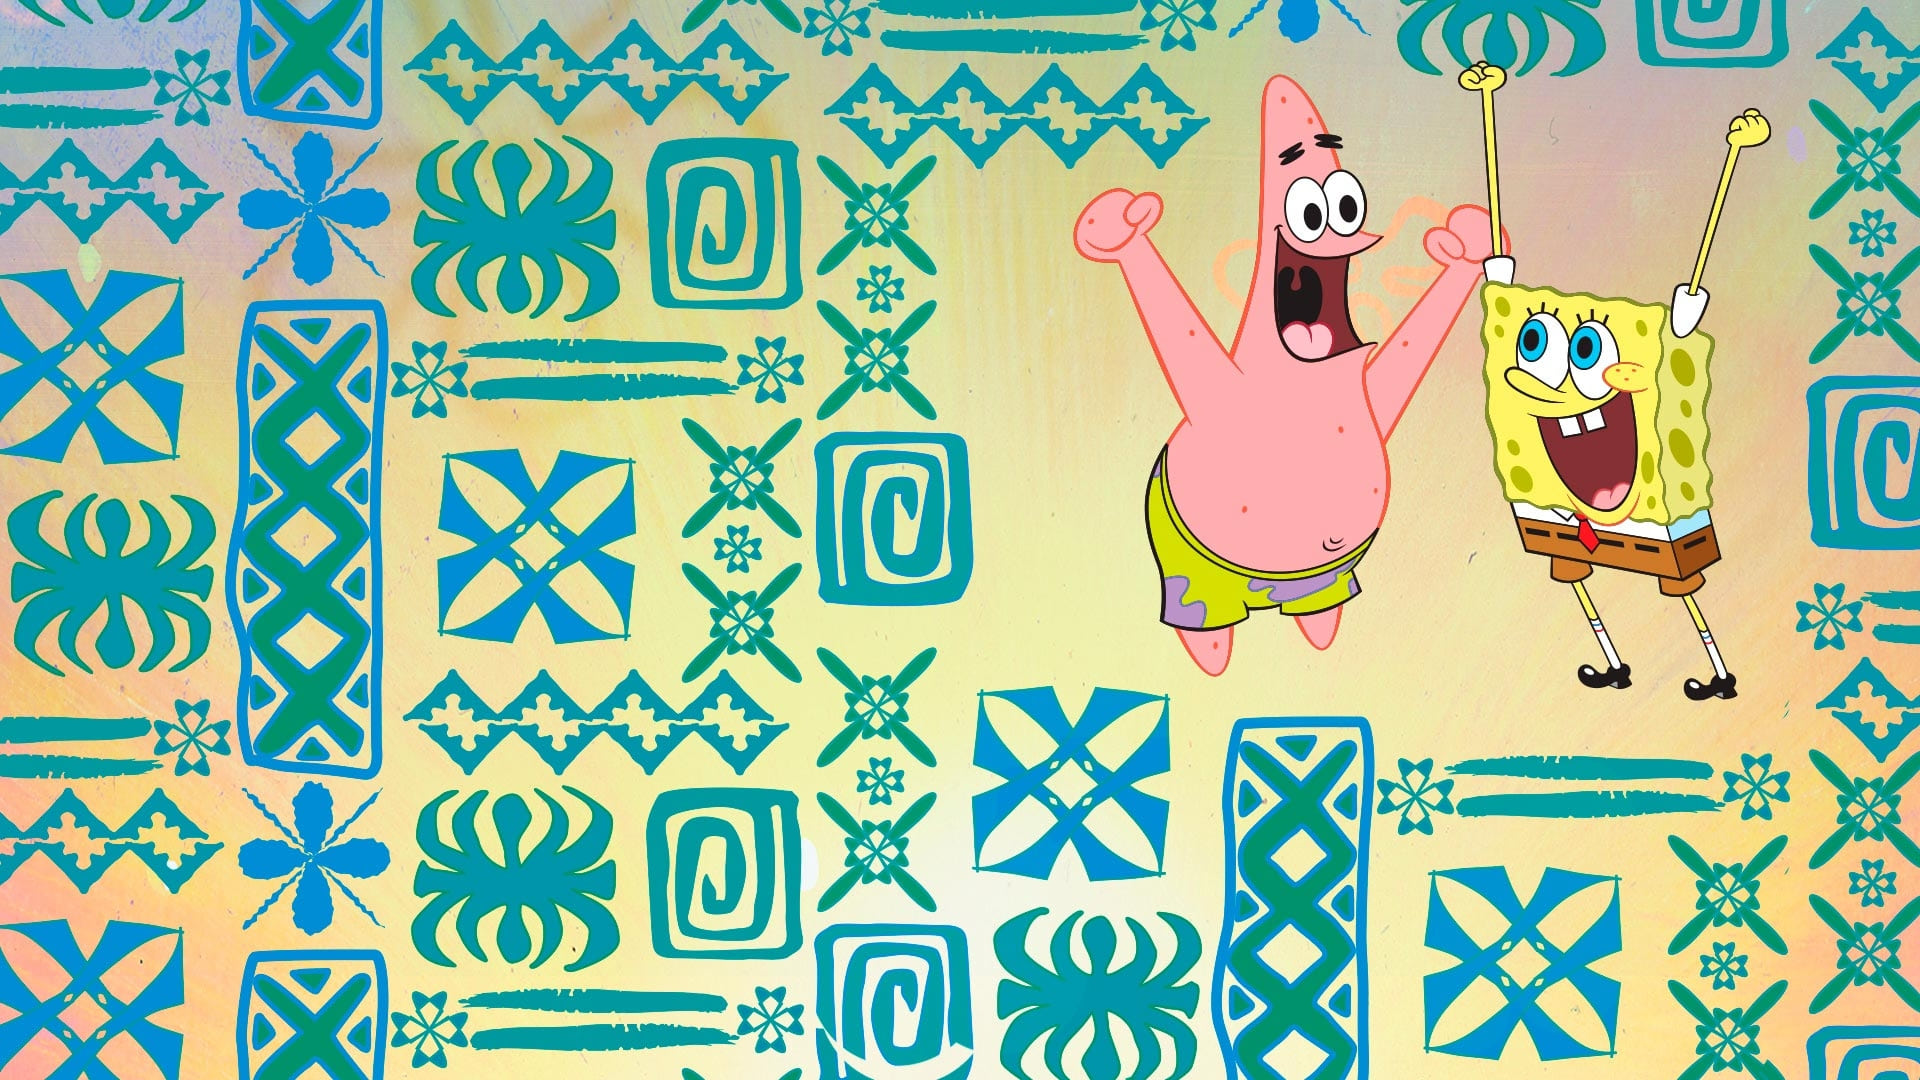 spongebob squarepants season 1 download